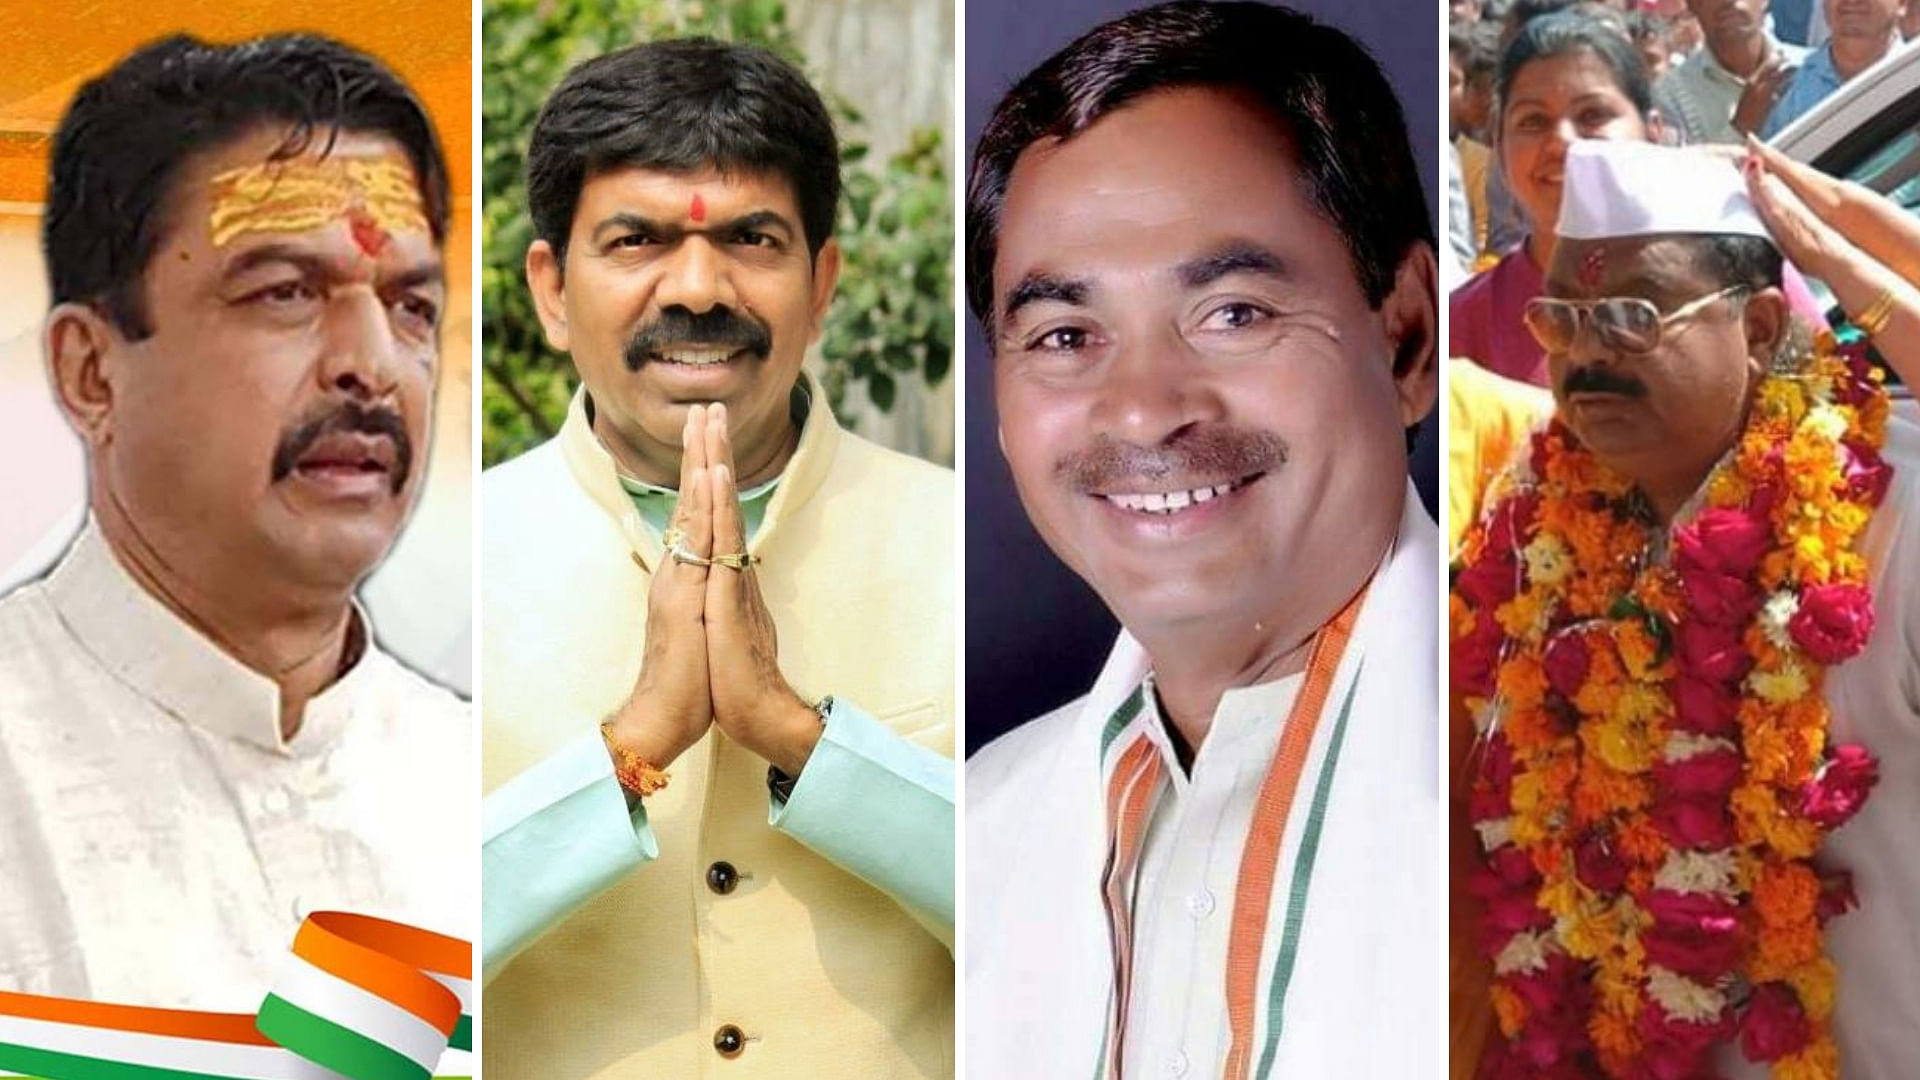 मध्य प्रदेश में निर्दलीय के तौर&nbsp; पर चुनाव लड़े बागी नेता कांग्रेस में वापसी को तैयार